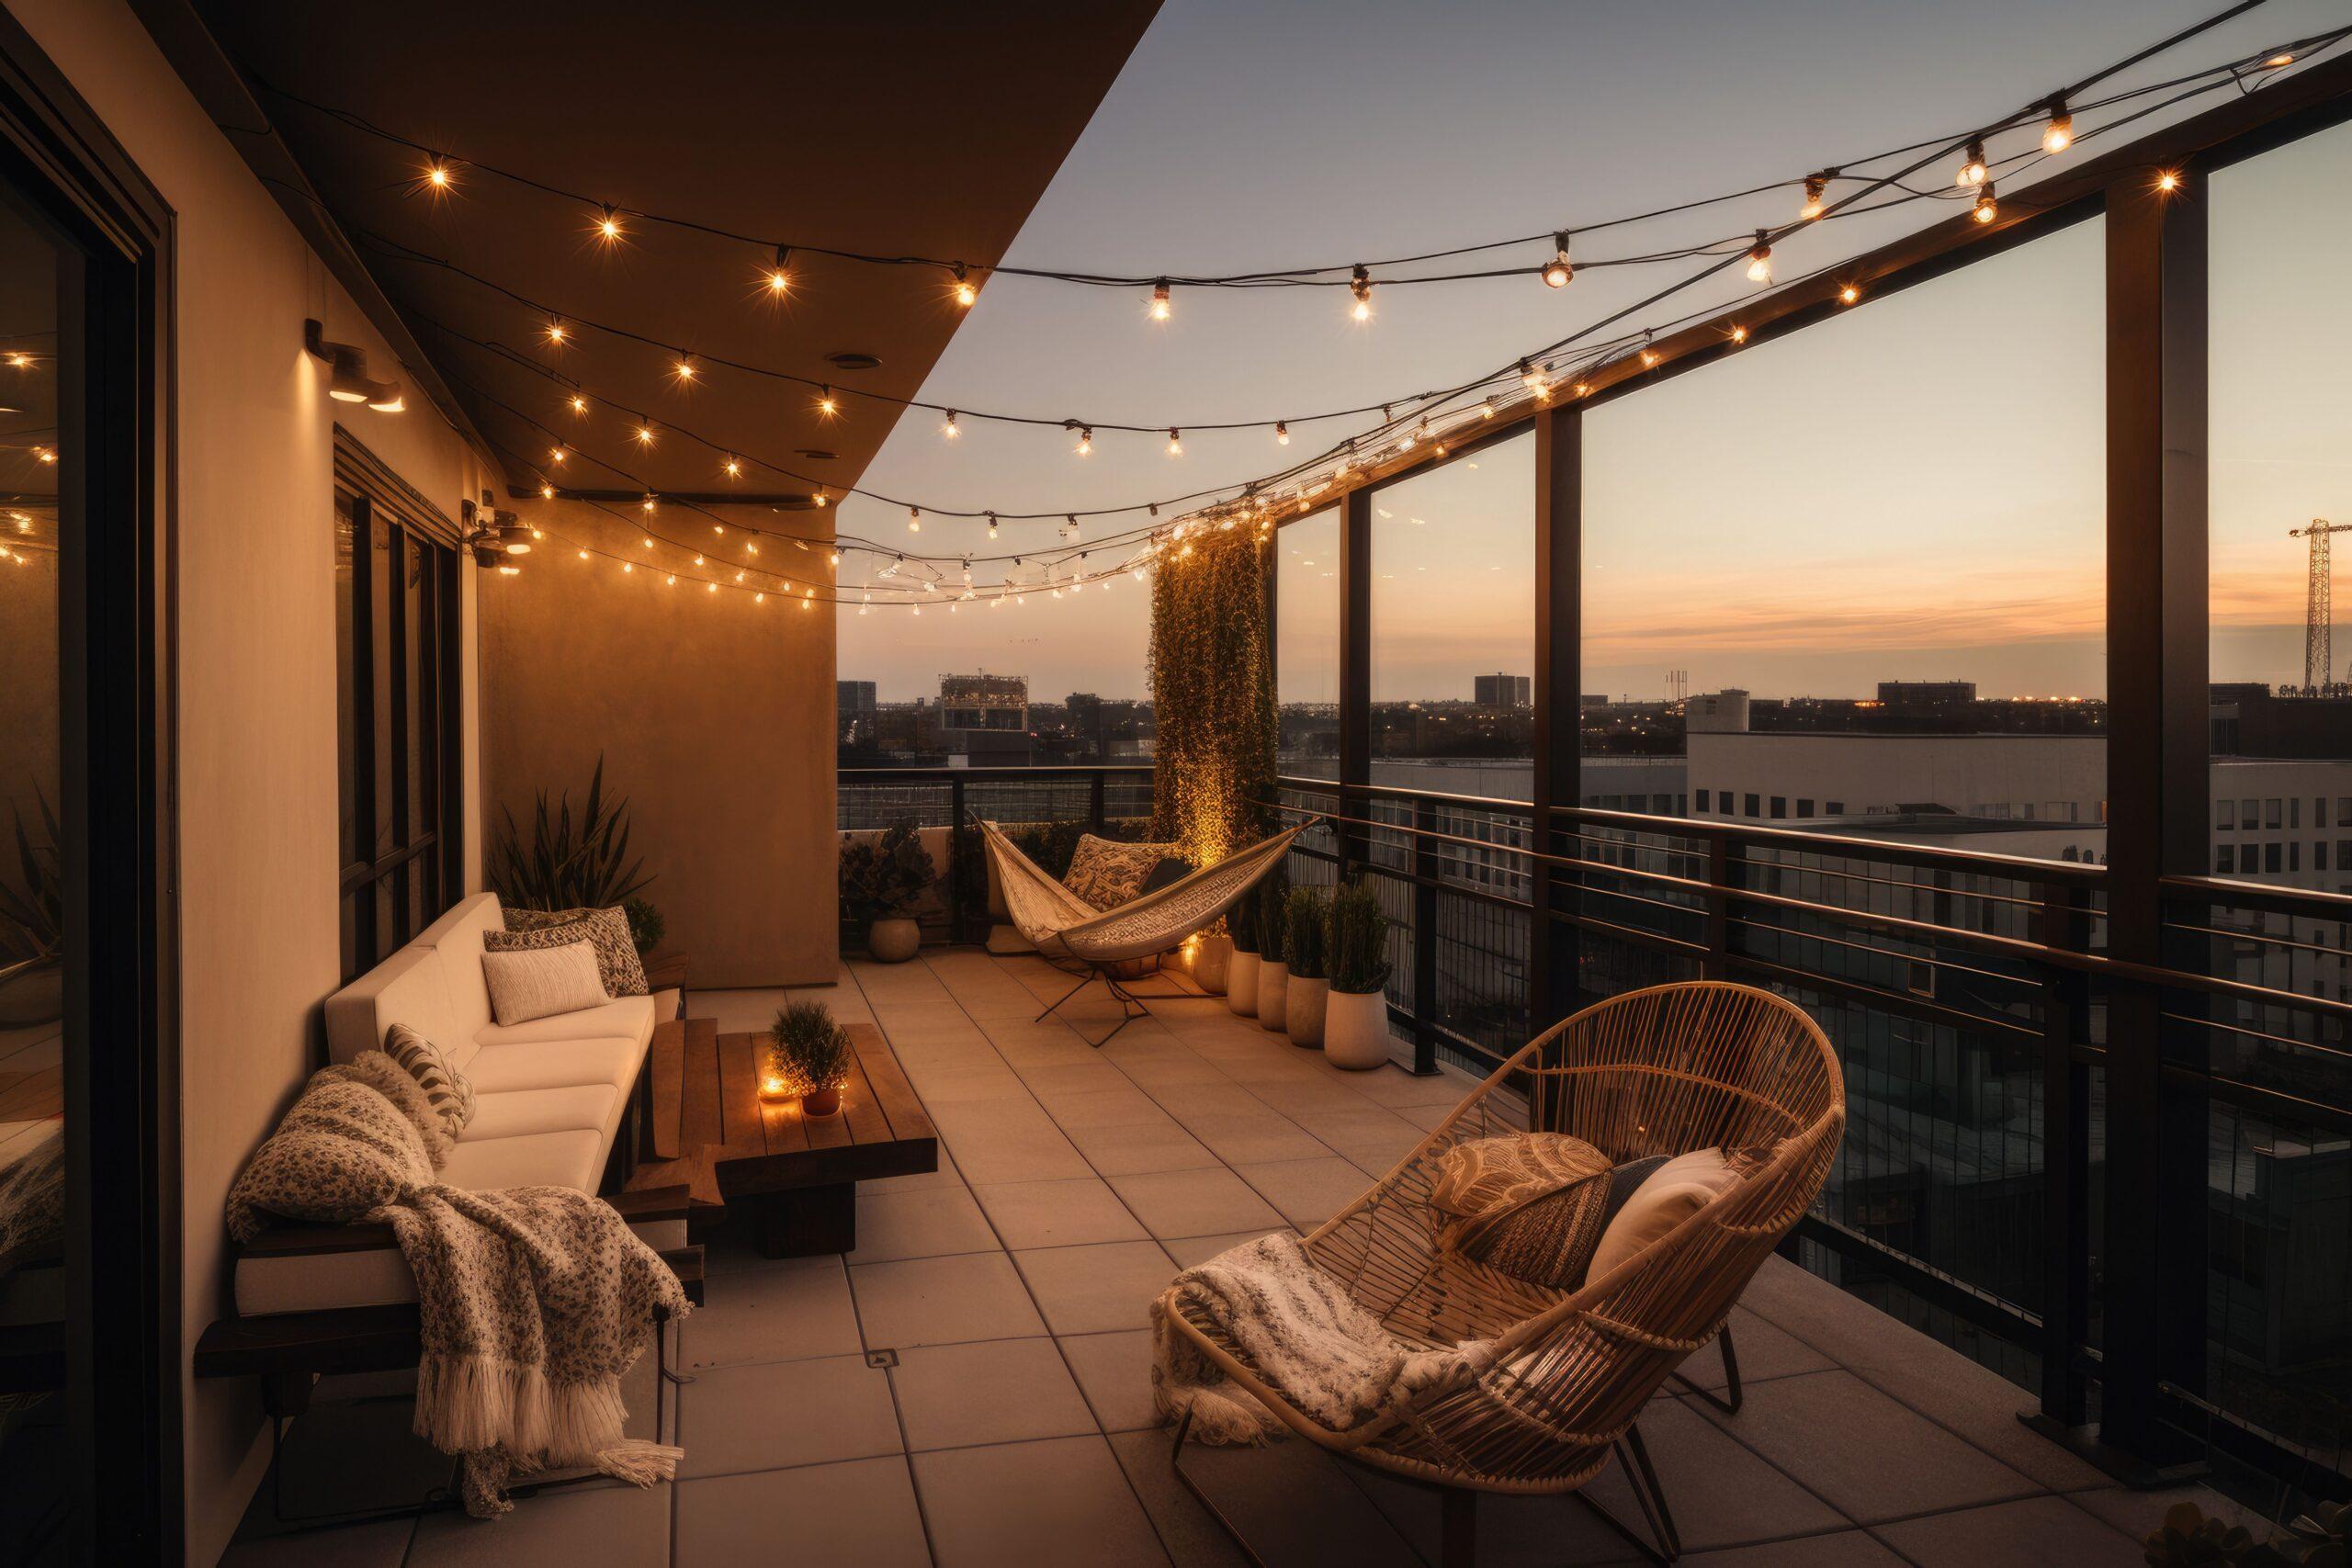 Ein moderner, komfortabler Dachterrassenbereich mit Loungebereich, Hängesessel und Lichterketten bei Sonnenuntergang, generative KI